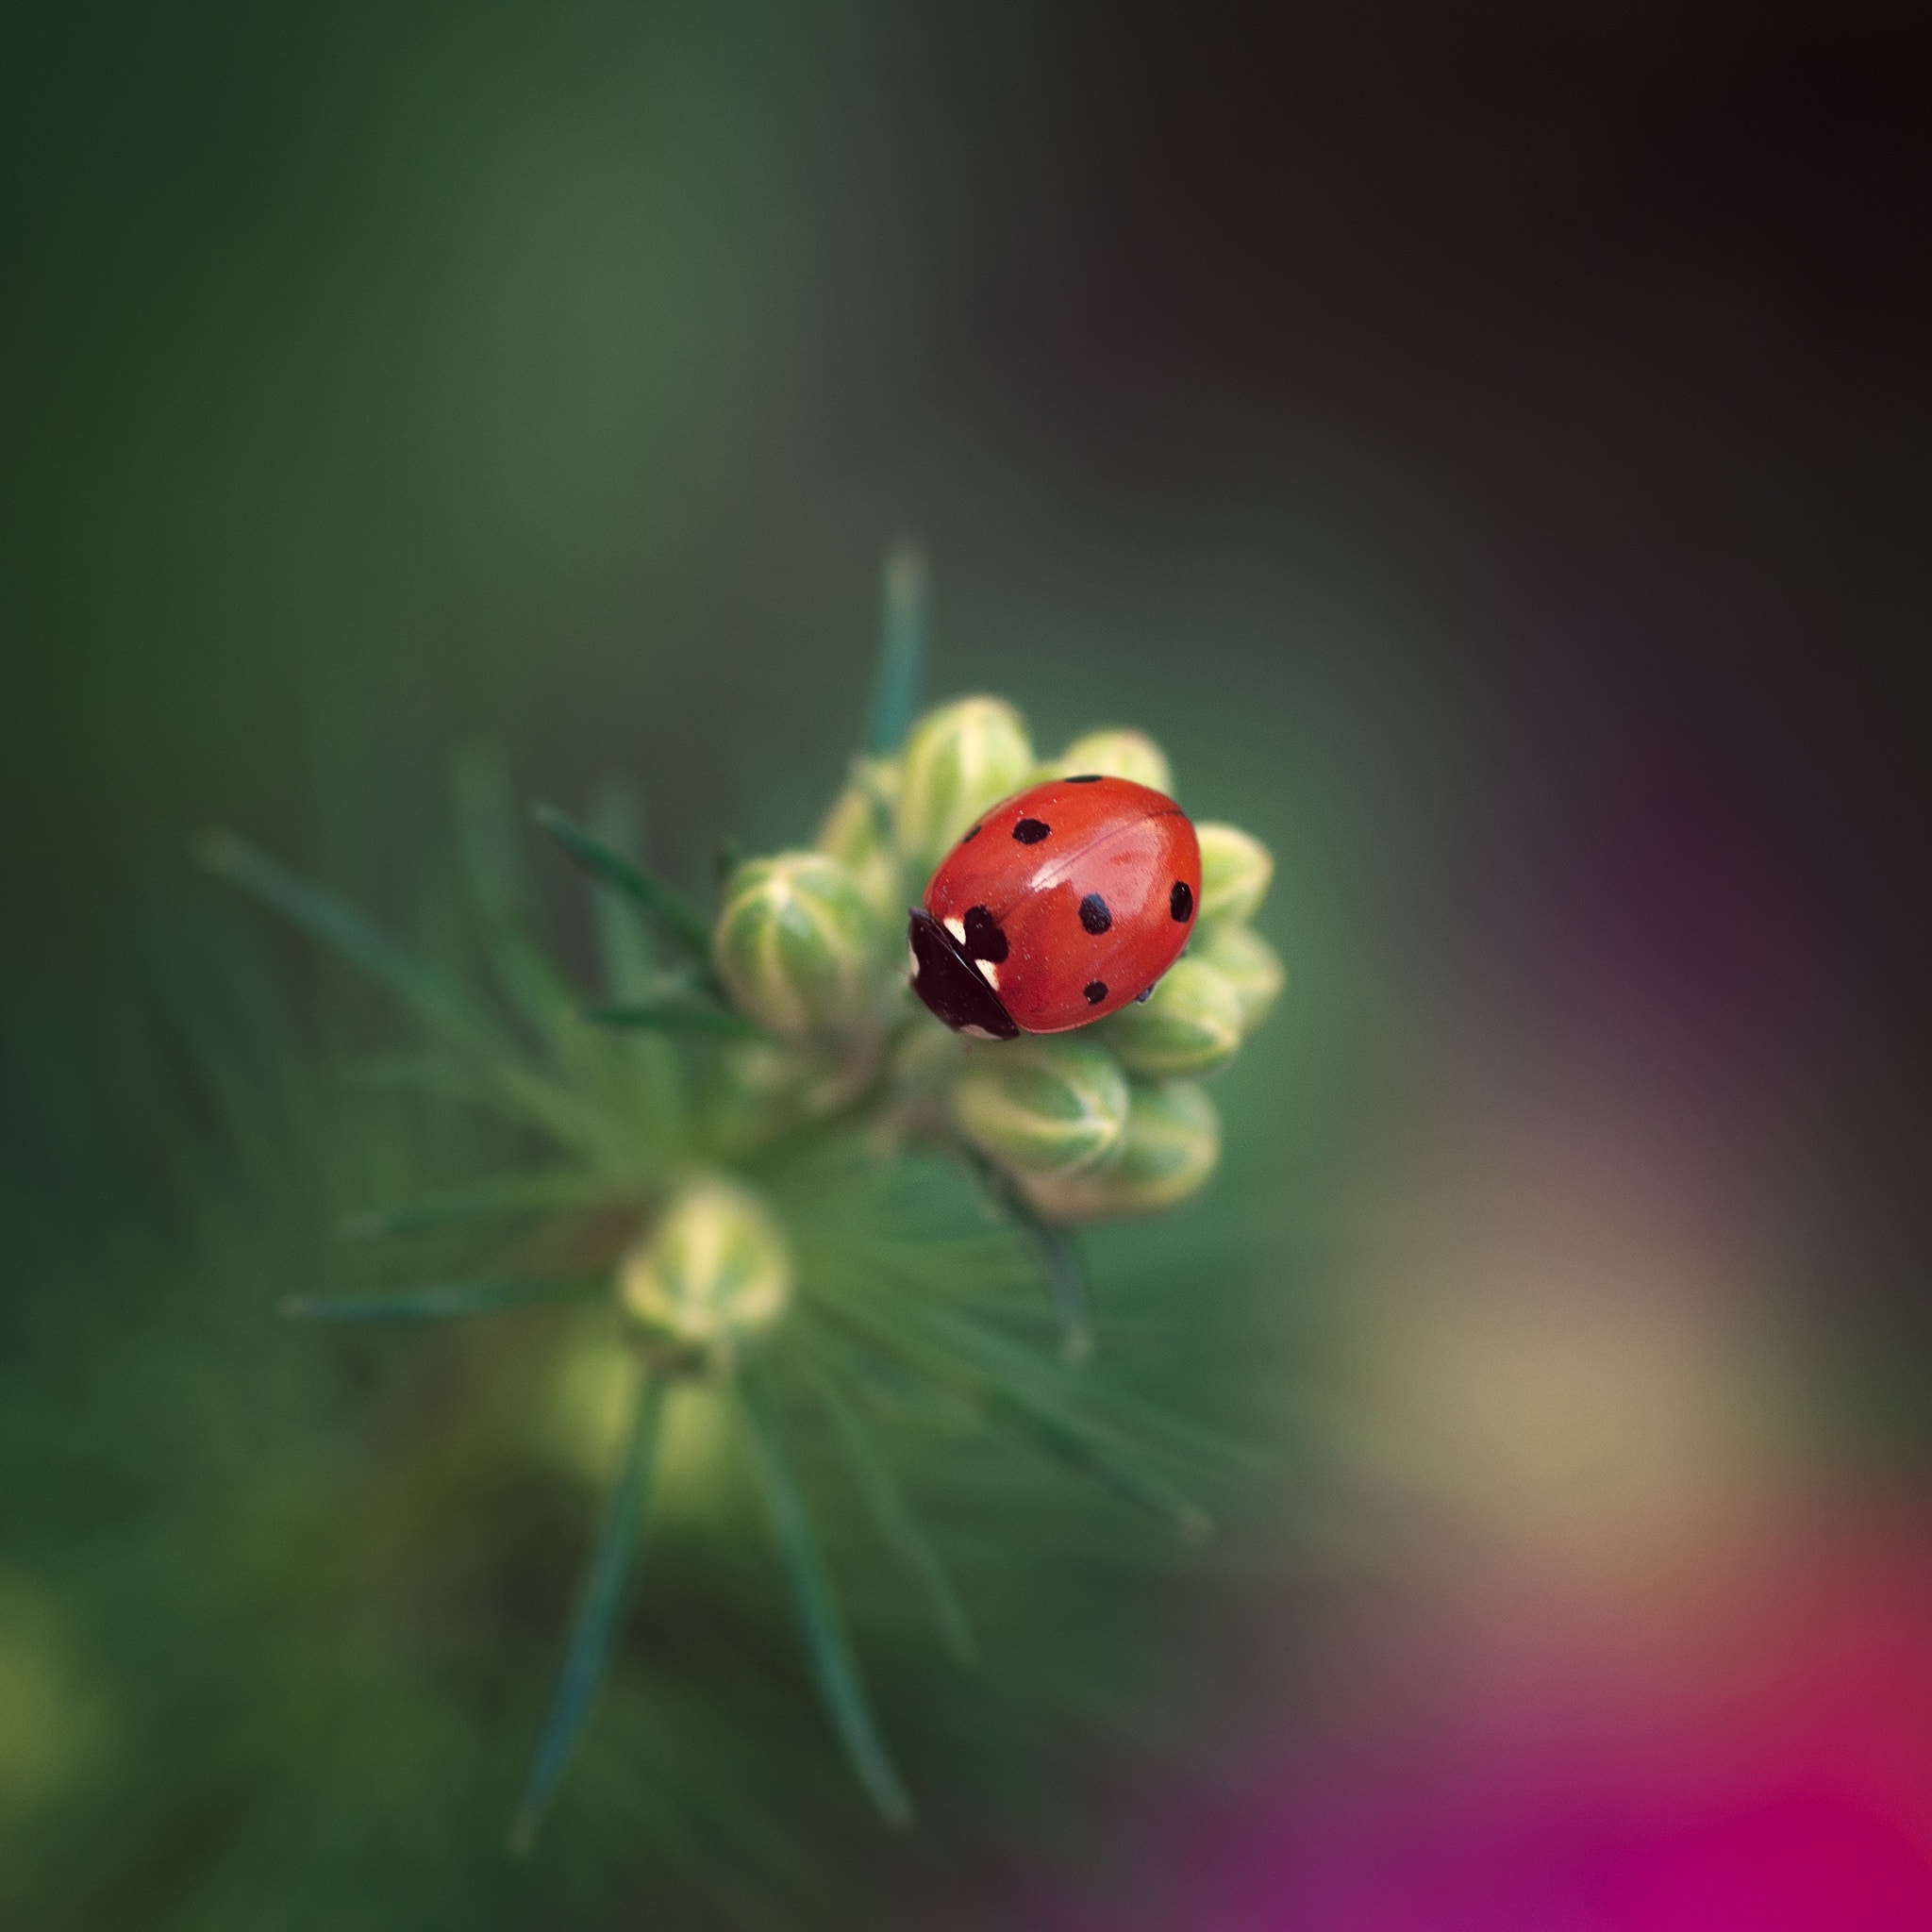 Pentax K-5 IIs sample photo. Ladybug photography